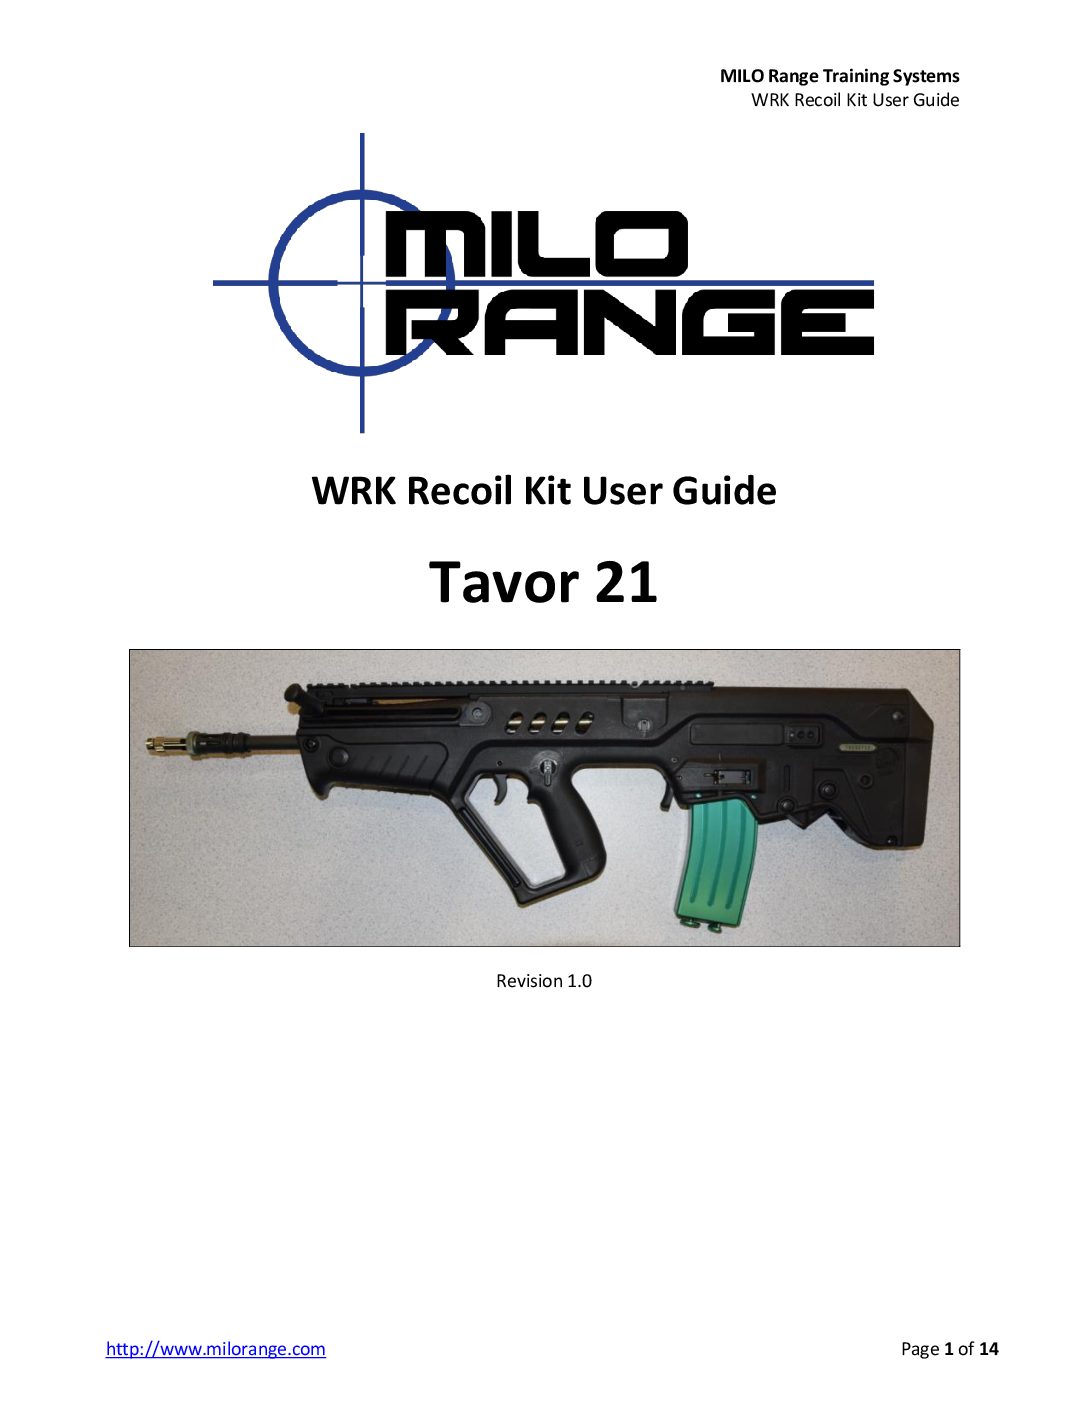 MILO Range Training Systems Tavor 21 WRK Recoil Kit User Guide